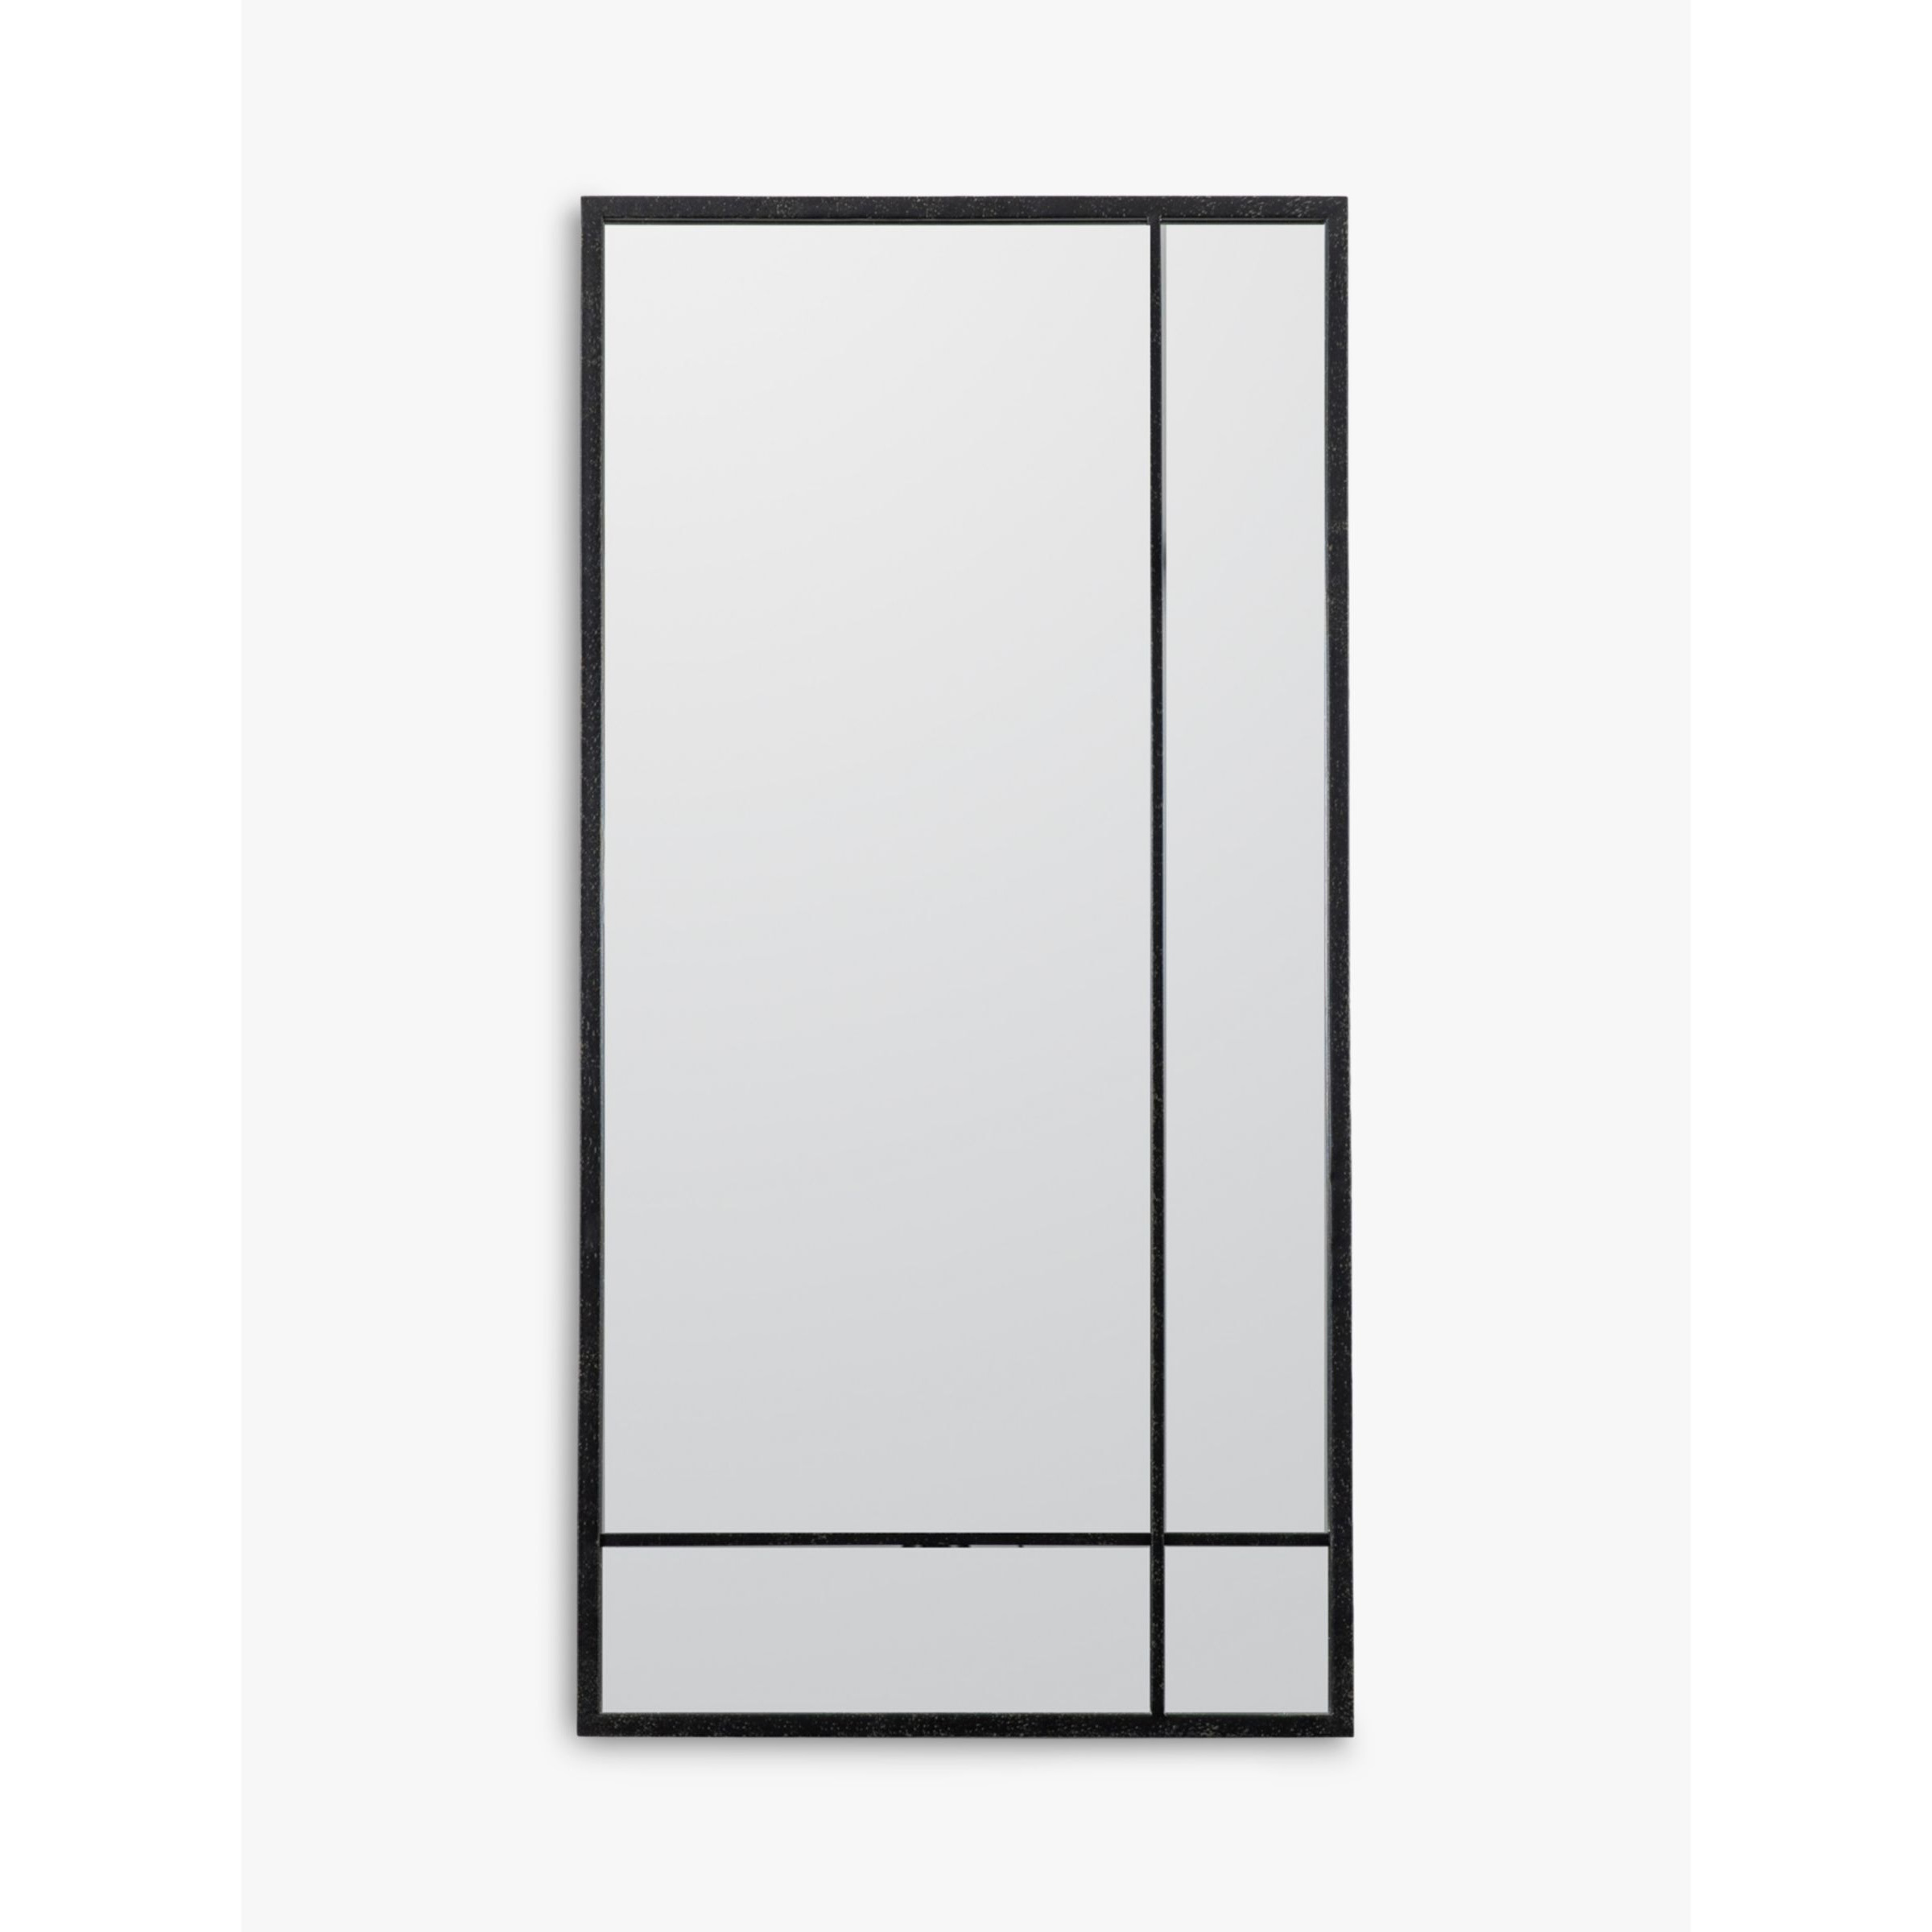 Gallery Direct Fruili Rectangular Metal Frame Wall Mirror, 100 x 50cm, Black - image 1